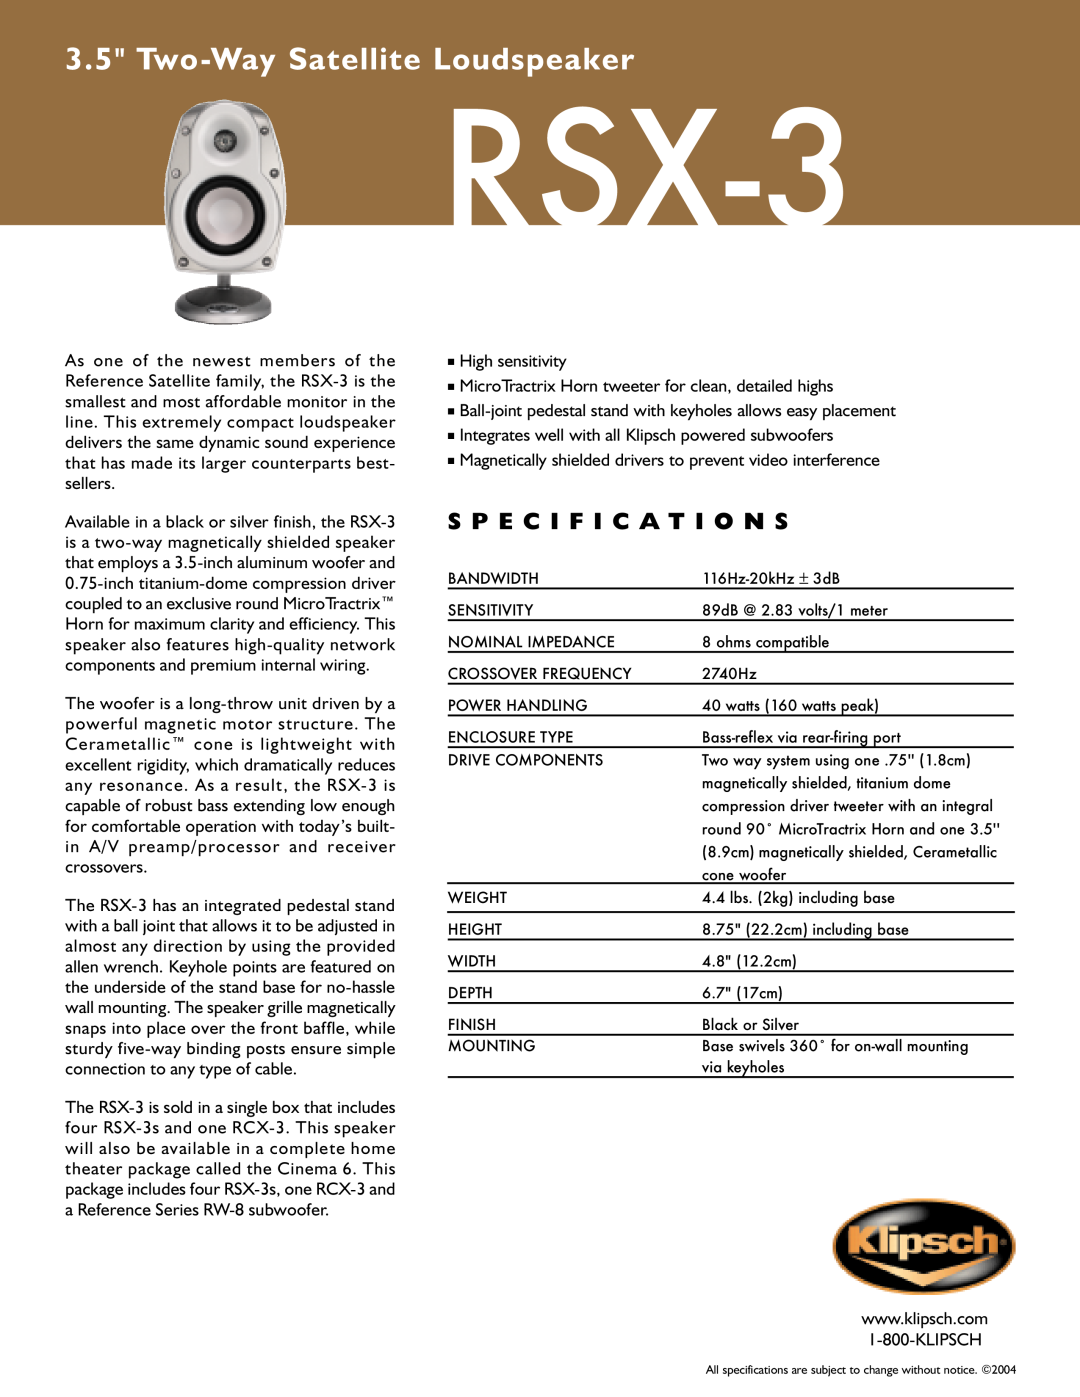 Klipsch RSX-3 specifications Two-WaySatellite Loudspeaker, S P E C I F I C A T I O N S 